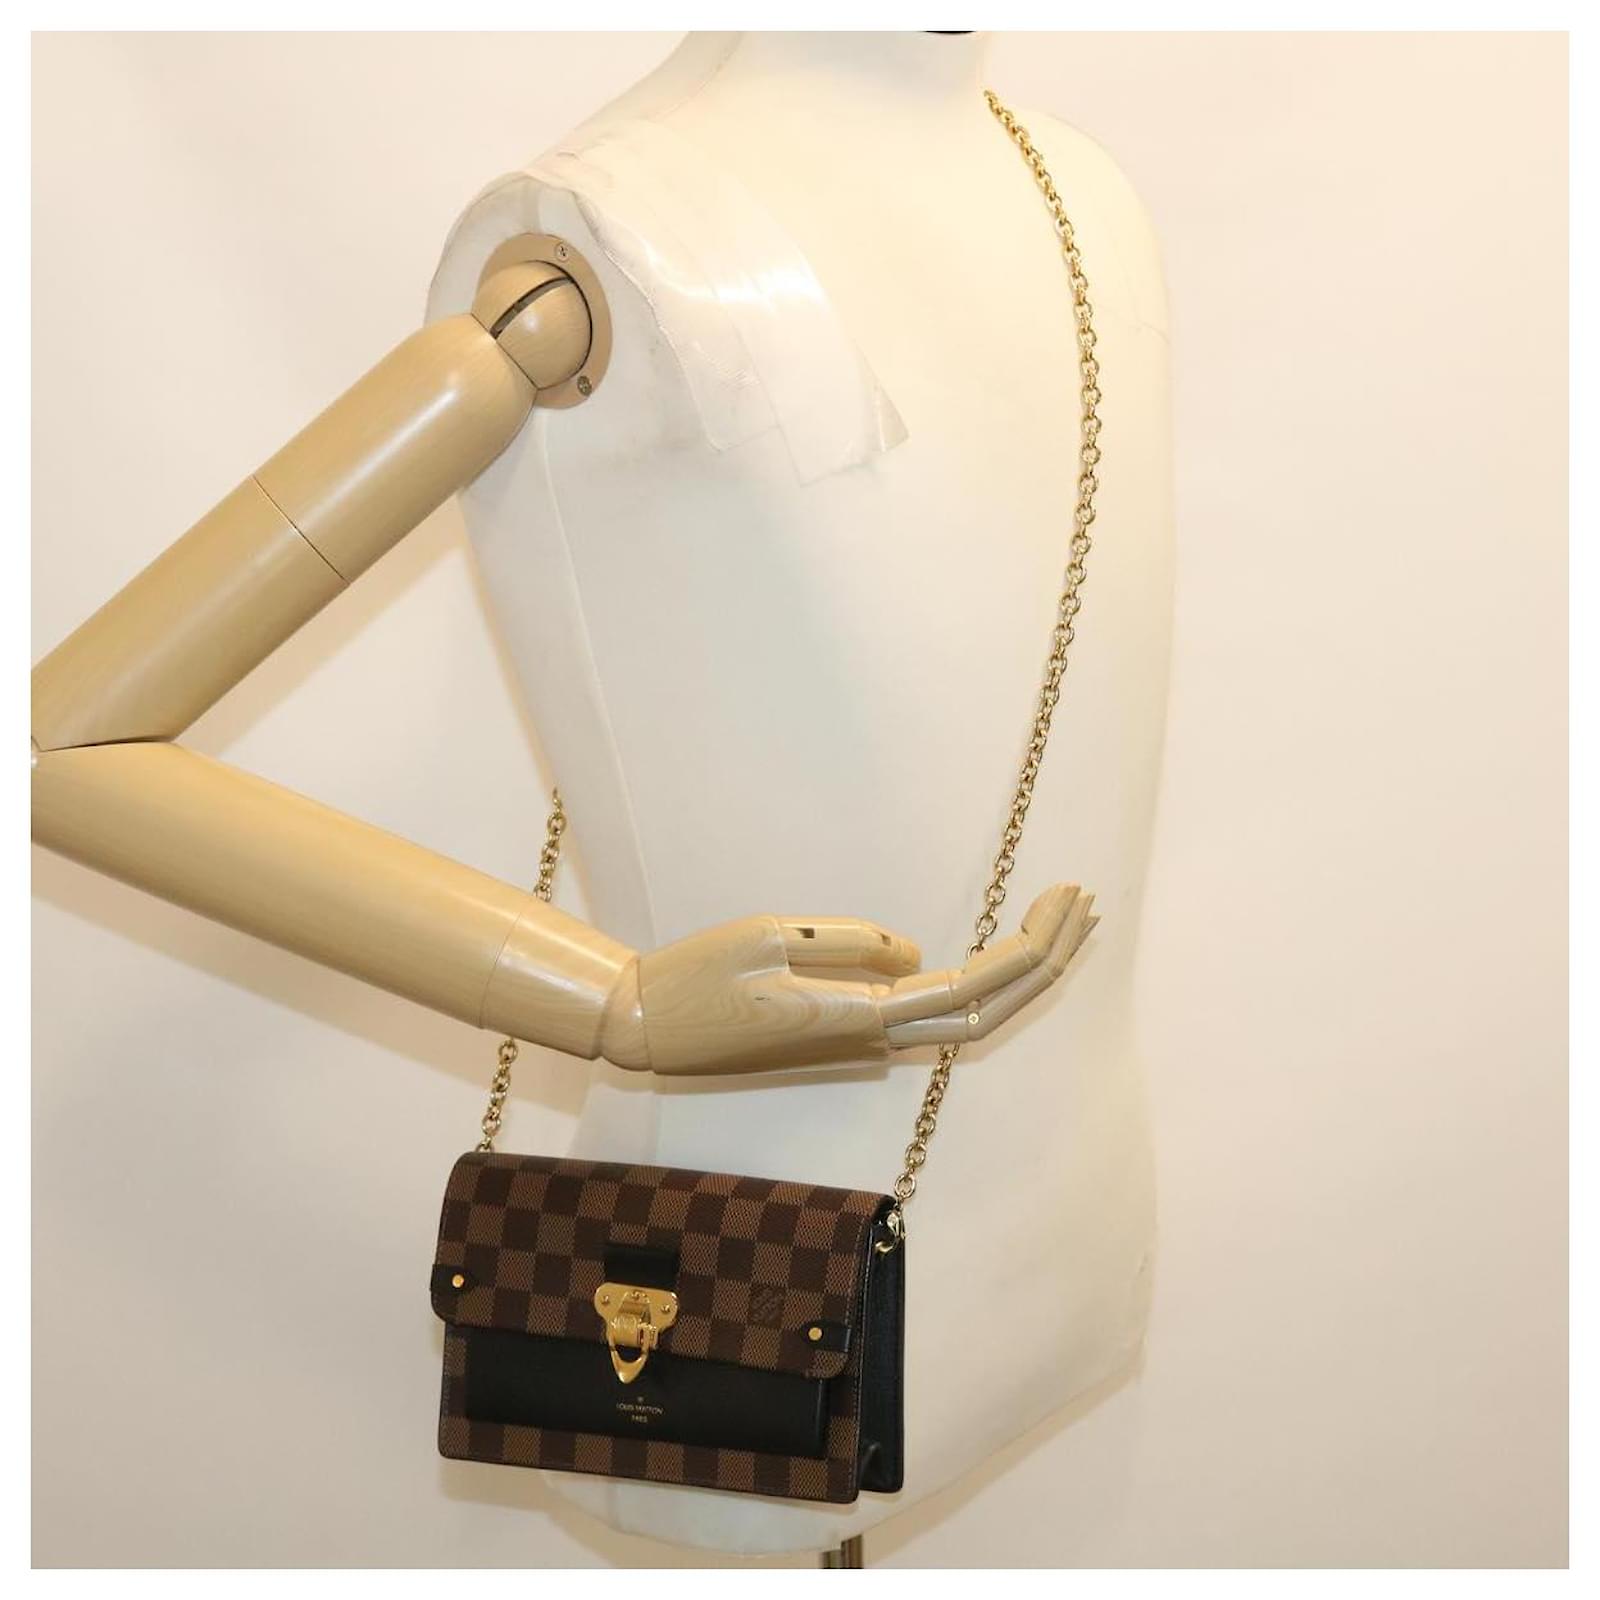 Vavin Chain Wallet Damier Ebene - Women - Small Leather Goods